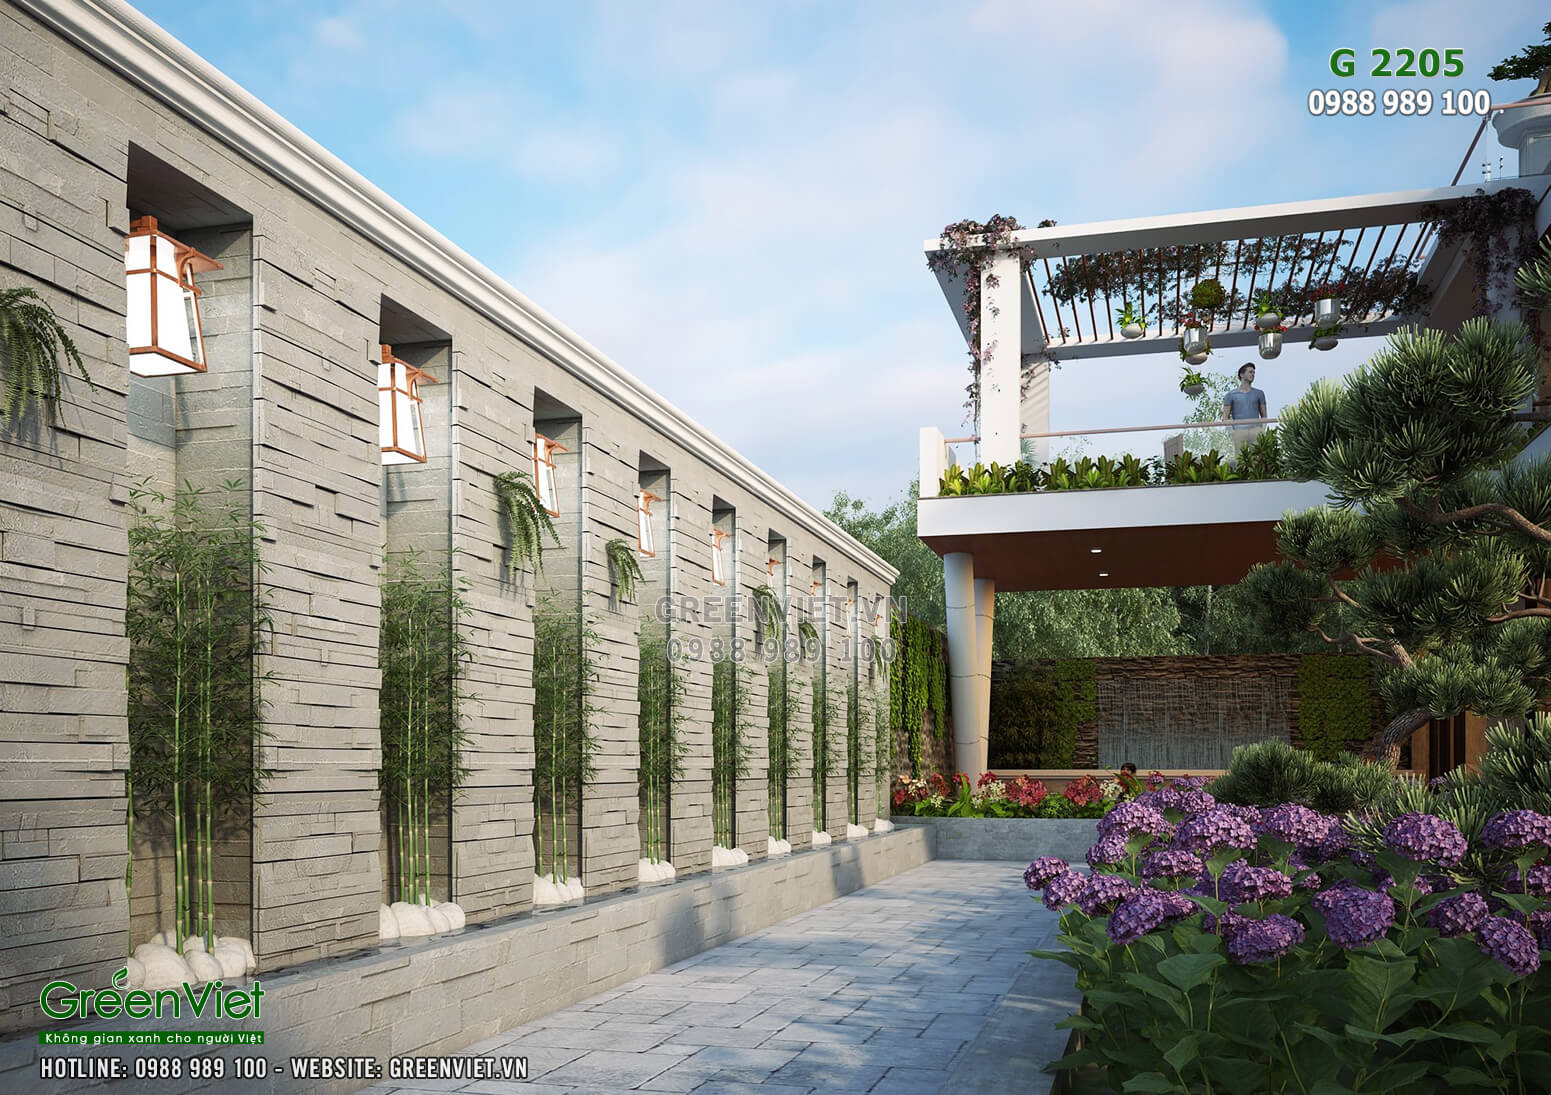 Hình ảnh: Thiết kế sân vườn đẹp cho villa hiện đại - G2205